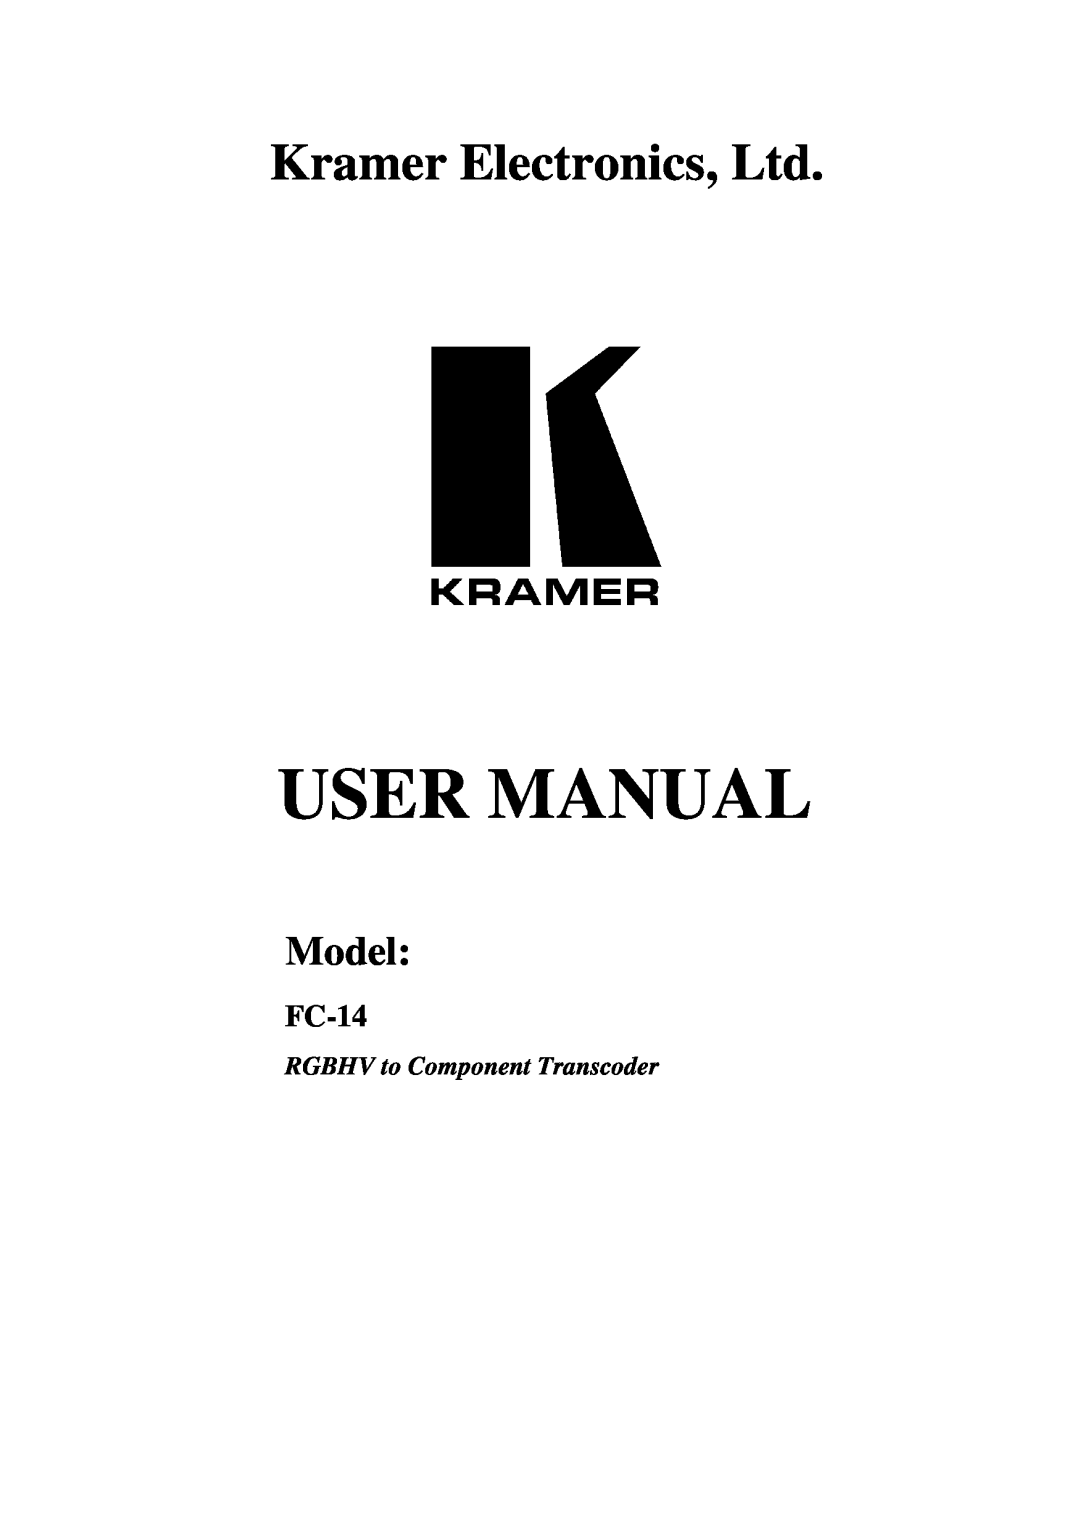 Kramer Electronics FC-14 user manual User Manual, Model, RGBHV to Component Transcoder 